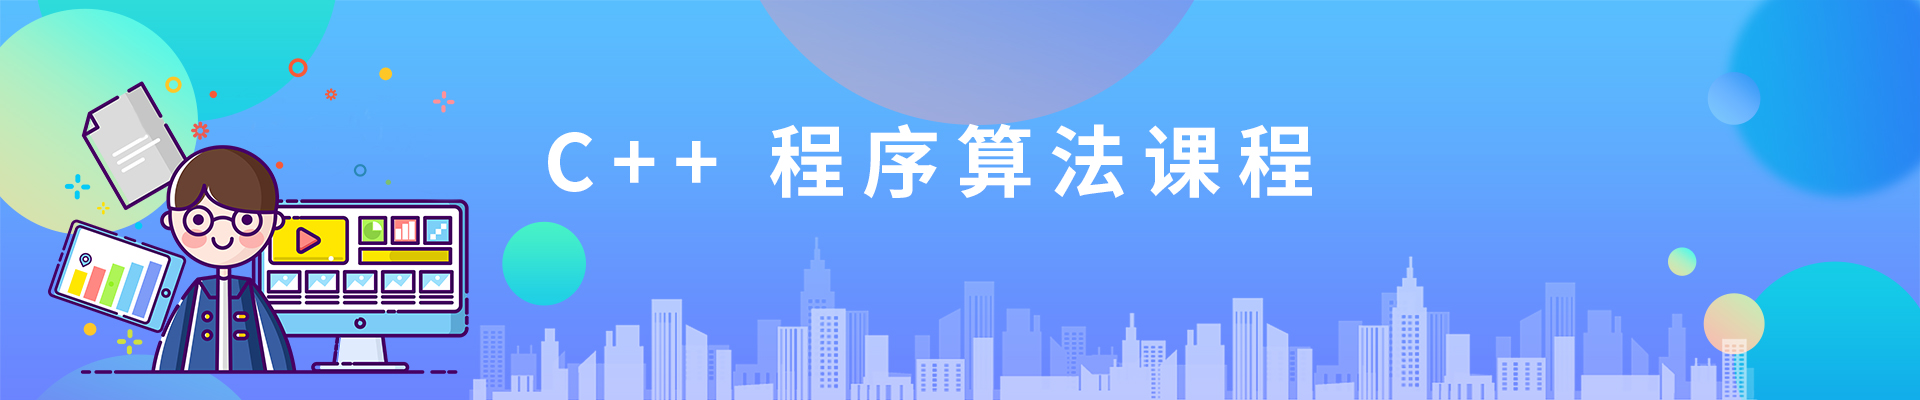 上海天山缤谷广场小码王少儿编程培训